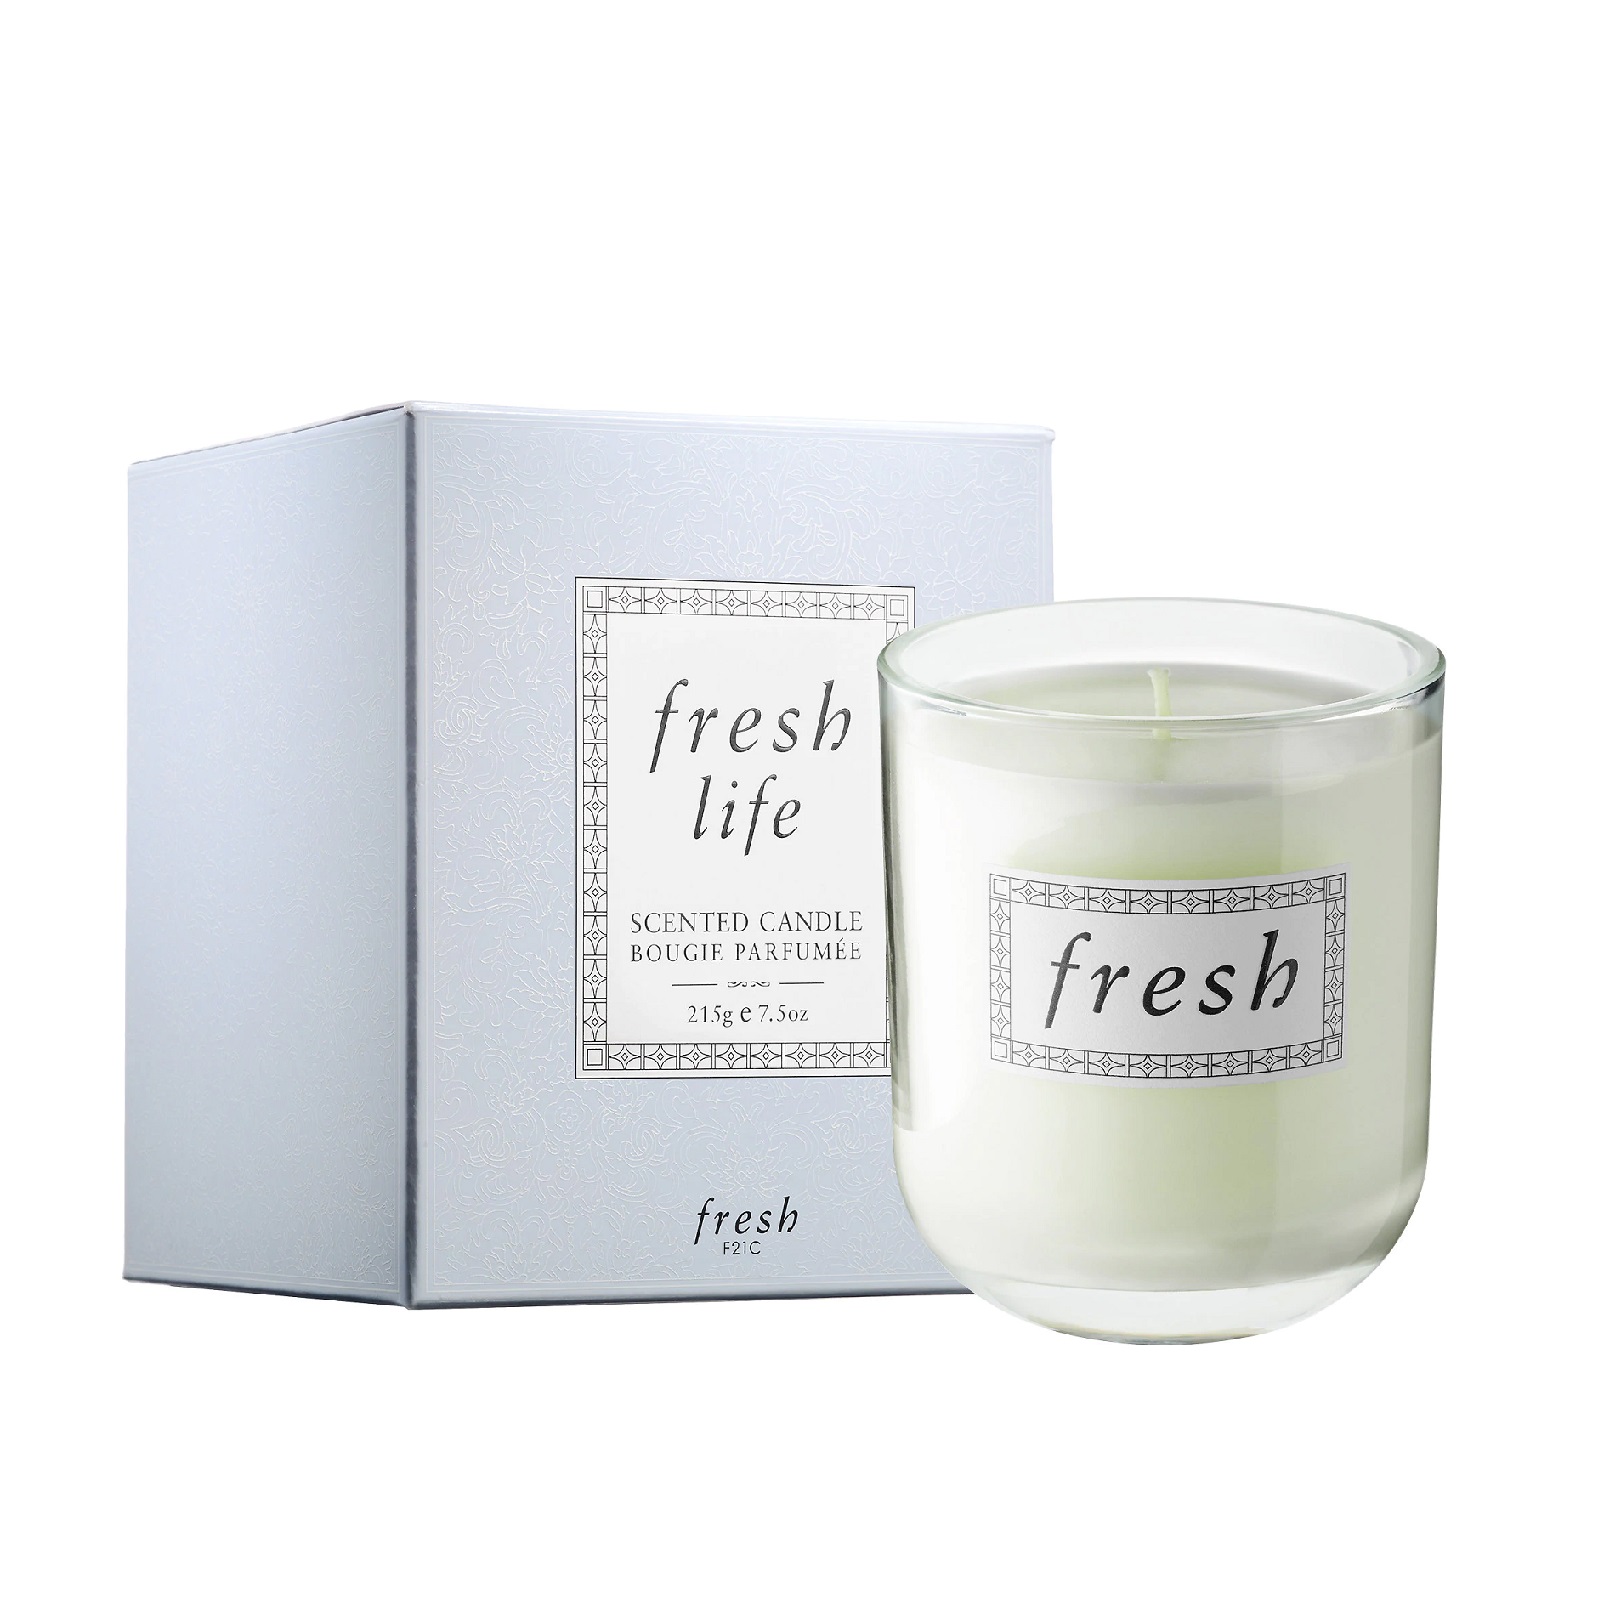 FRESH Fresh Life Eau De Parfum 30ml – Larchmont Beauty Center